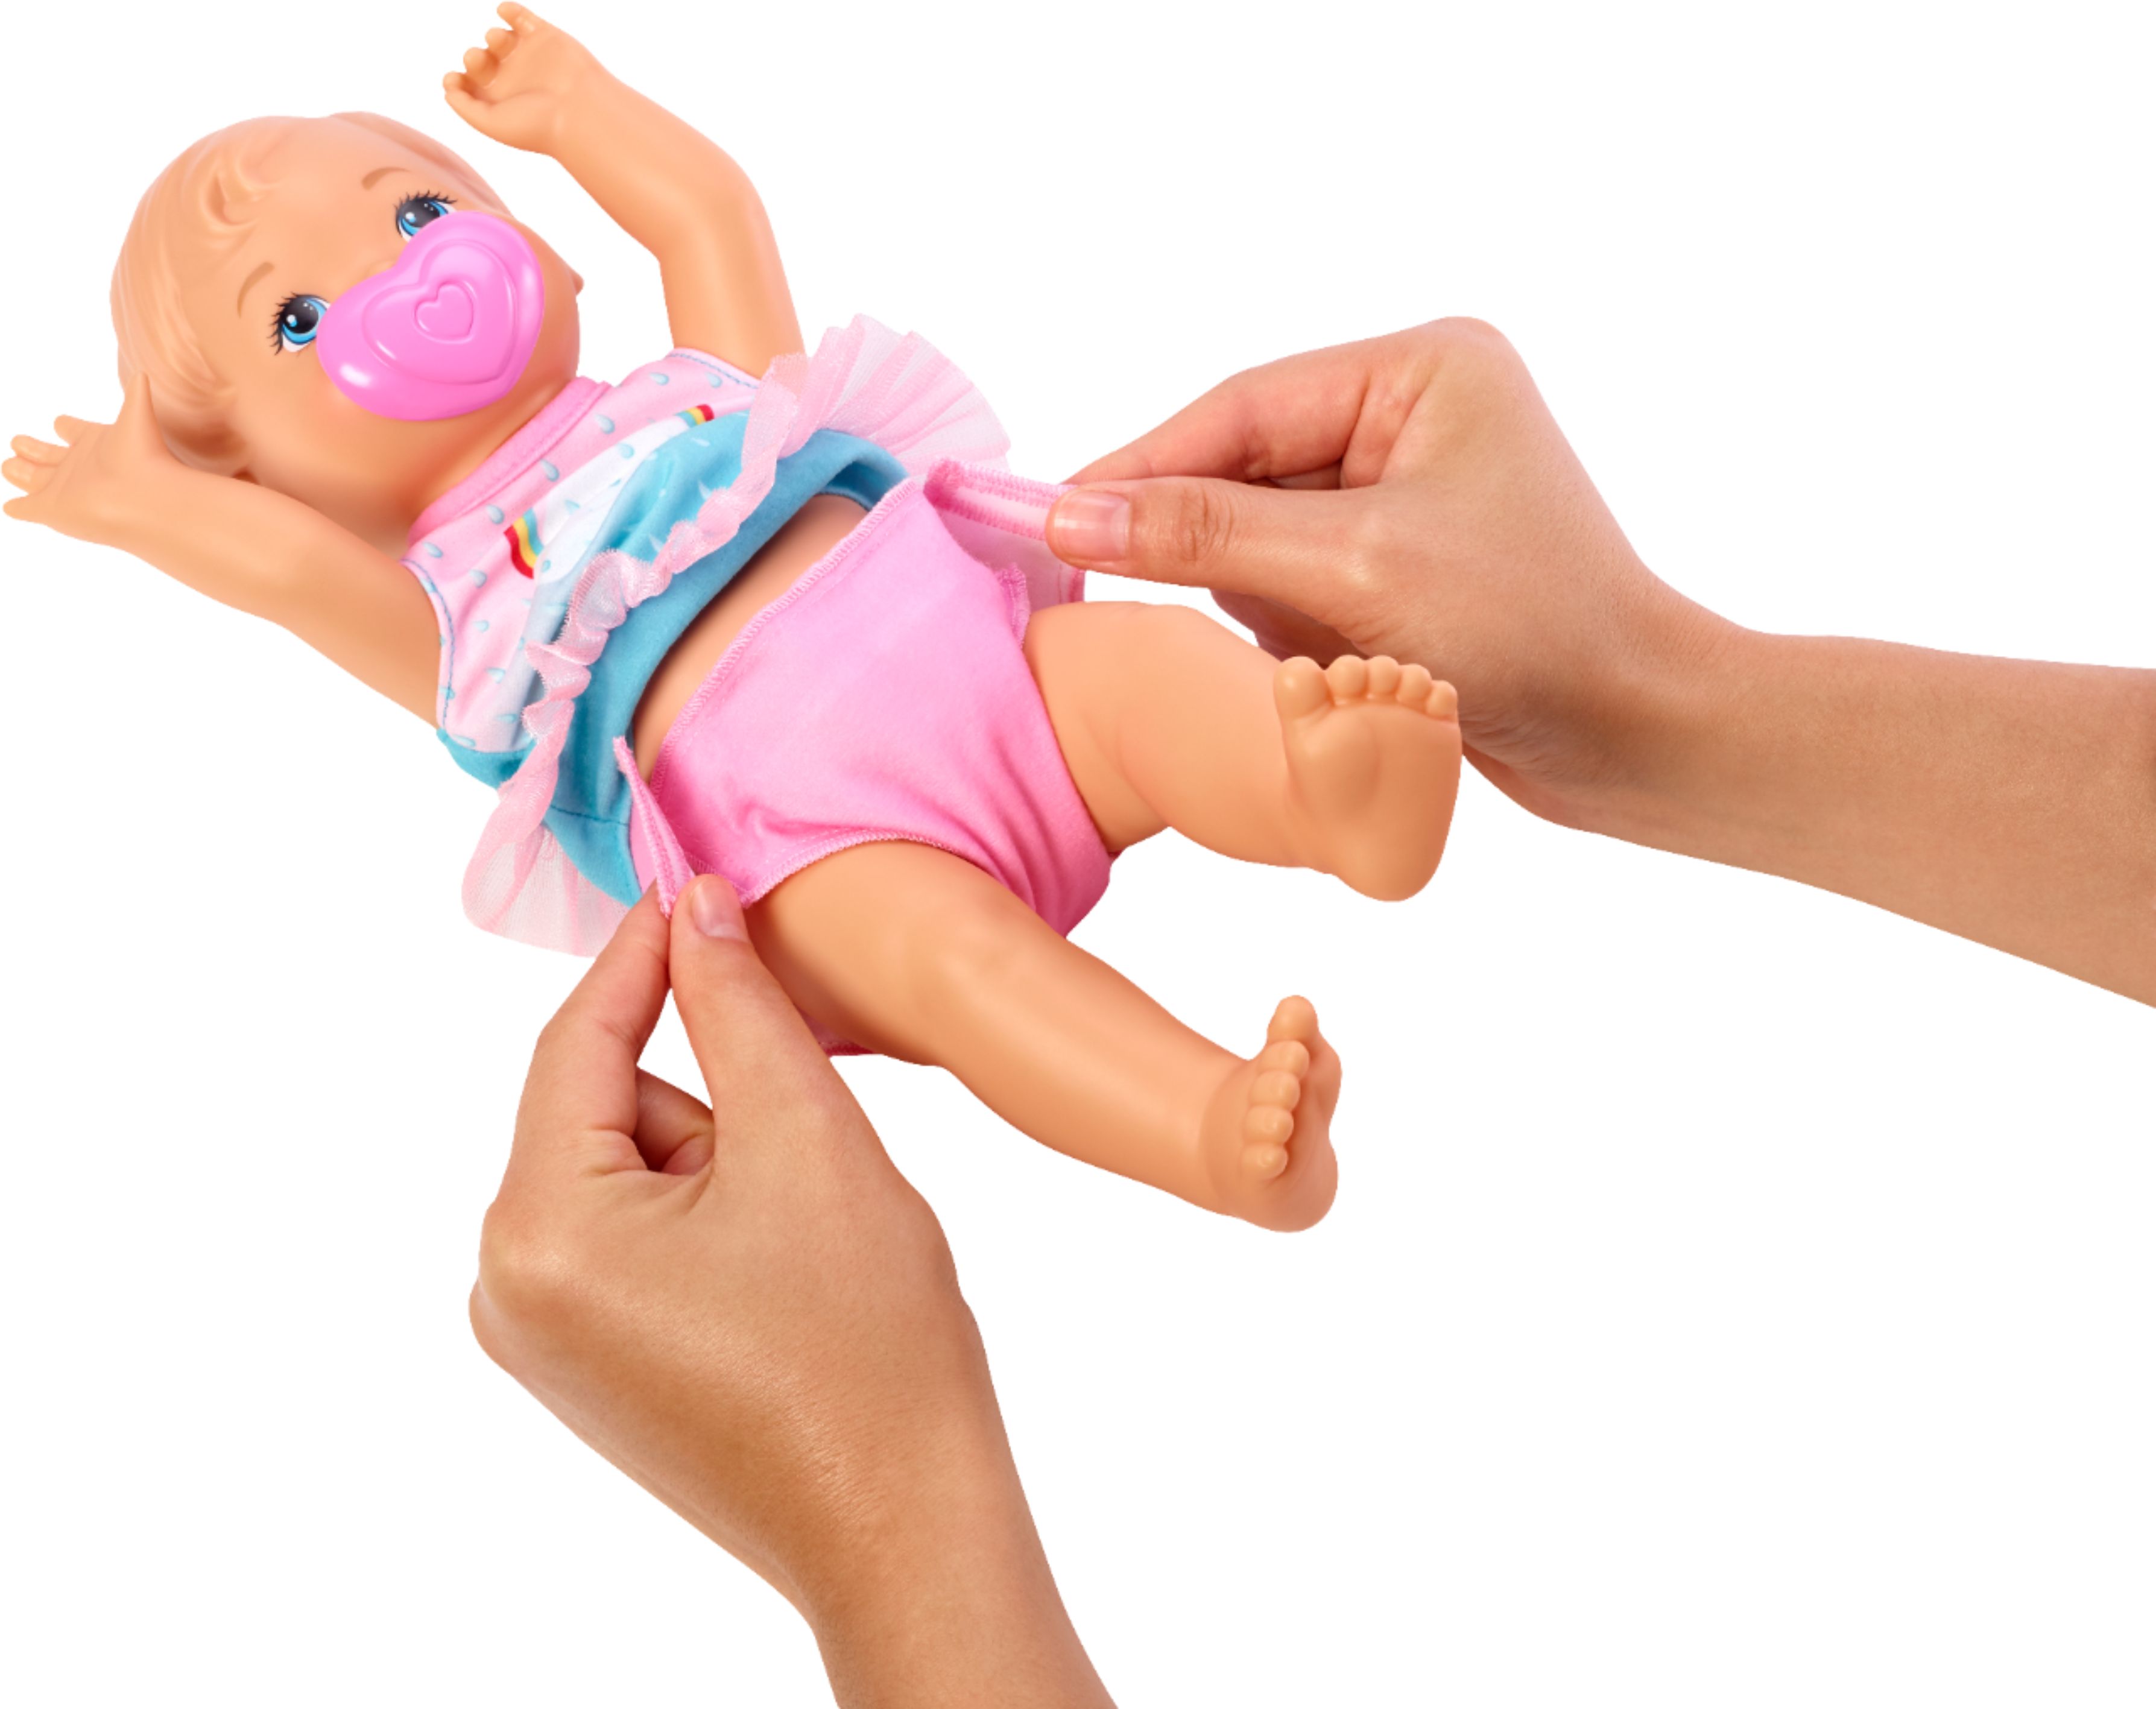 Best Buy: Little Mommy Drink & Wet Deluxe Doll Pink Blue FKD02